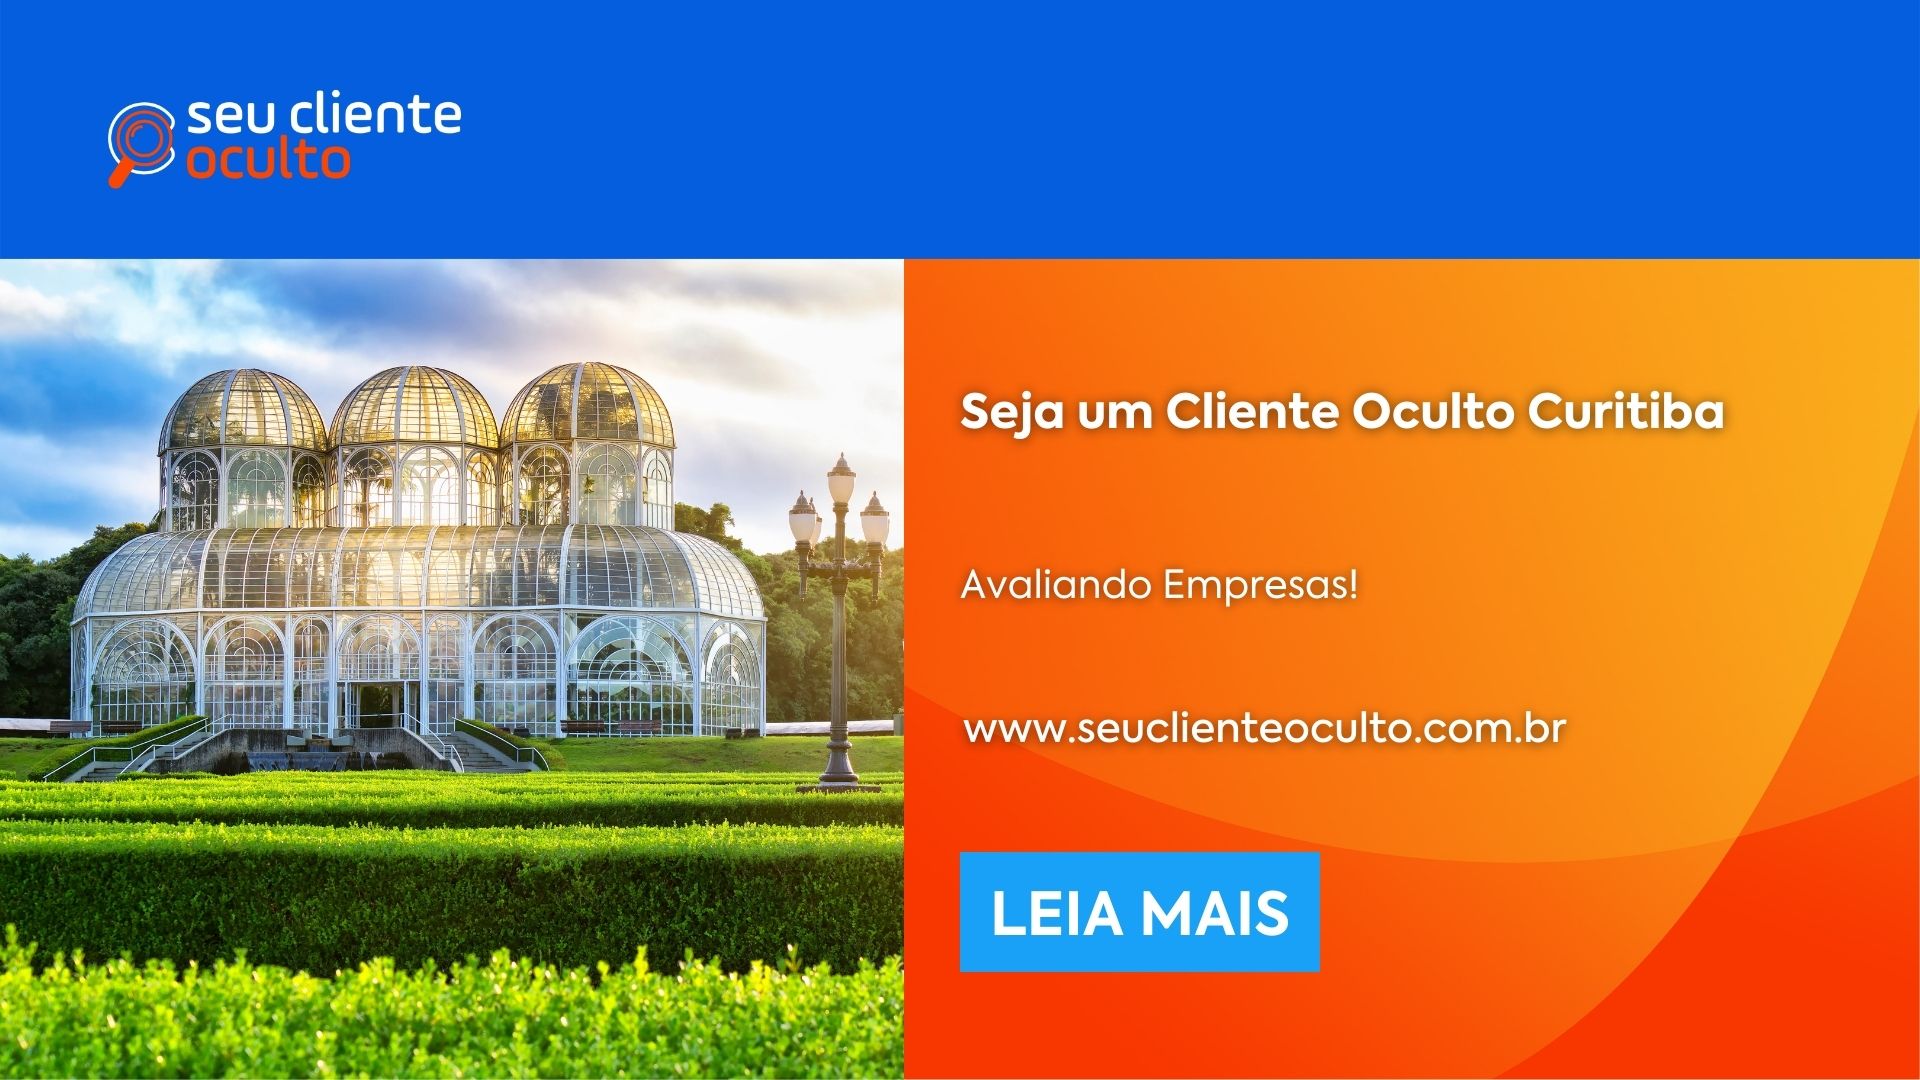 Seja um Cliente Oculto Curitiba, Avaliando Empresas! - Seu Cliente Oculto